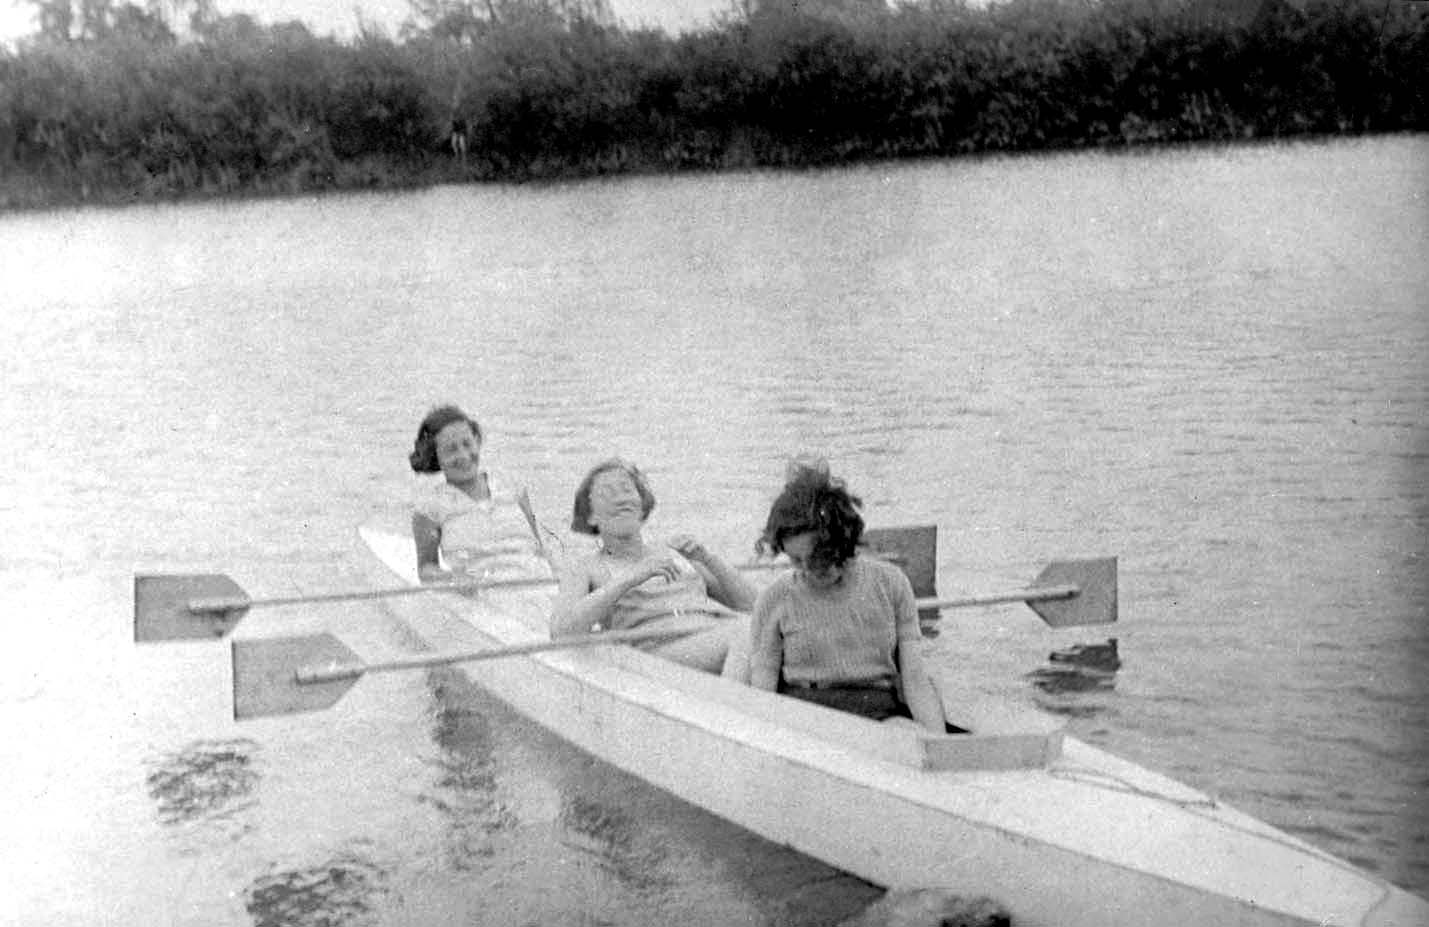 אושוויינצ’ים, פולין, 1933, נערות  חותרות על נהר הסולה (Sola). הנערות נרצחו בשואה.<br />  מימין חוה דוכלויטר (Dochleuter).  משמאל 